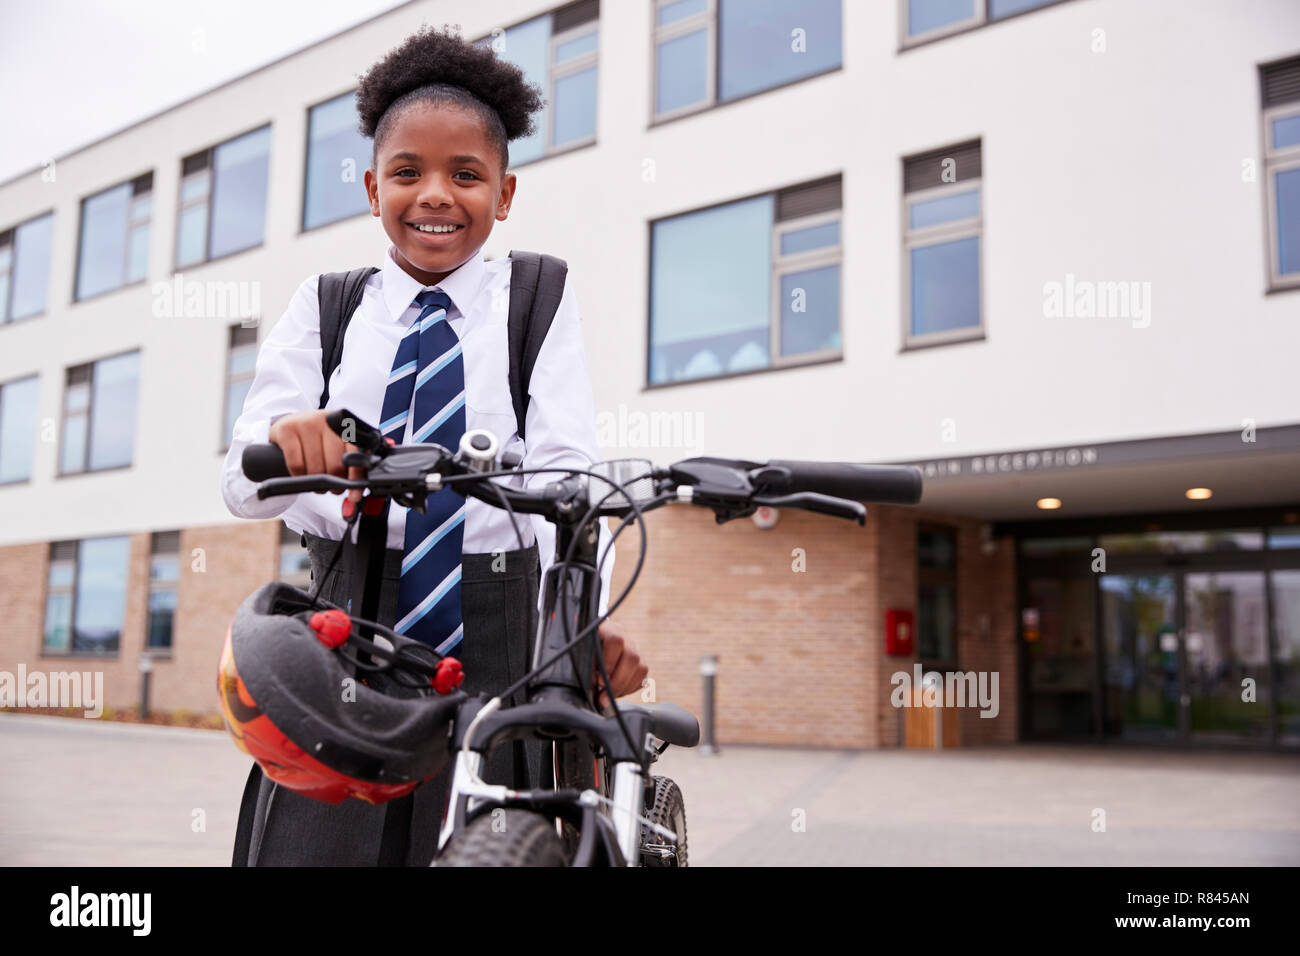 Portrait von weiblichen High School Student trägt Uniform mit Fahrrad ausserhalb der Schule Gebäude Stockfoto